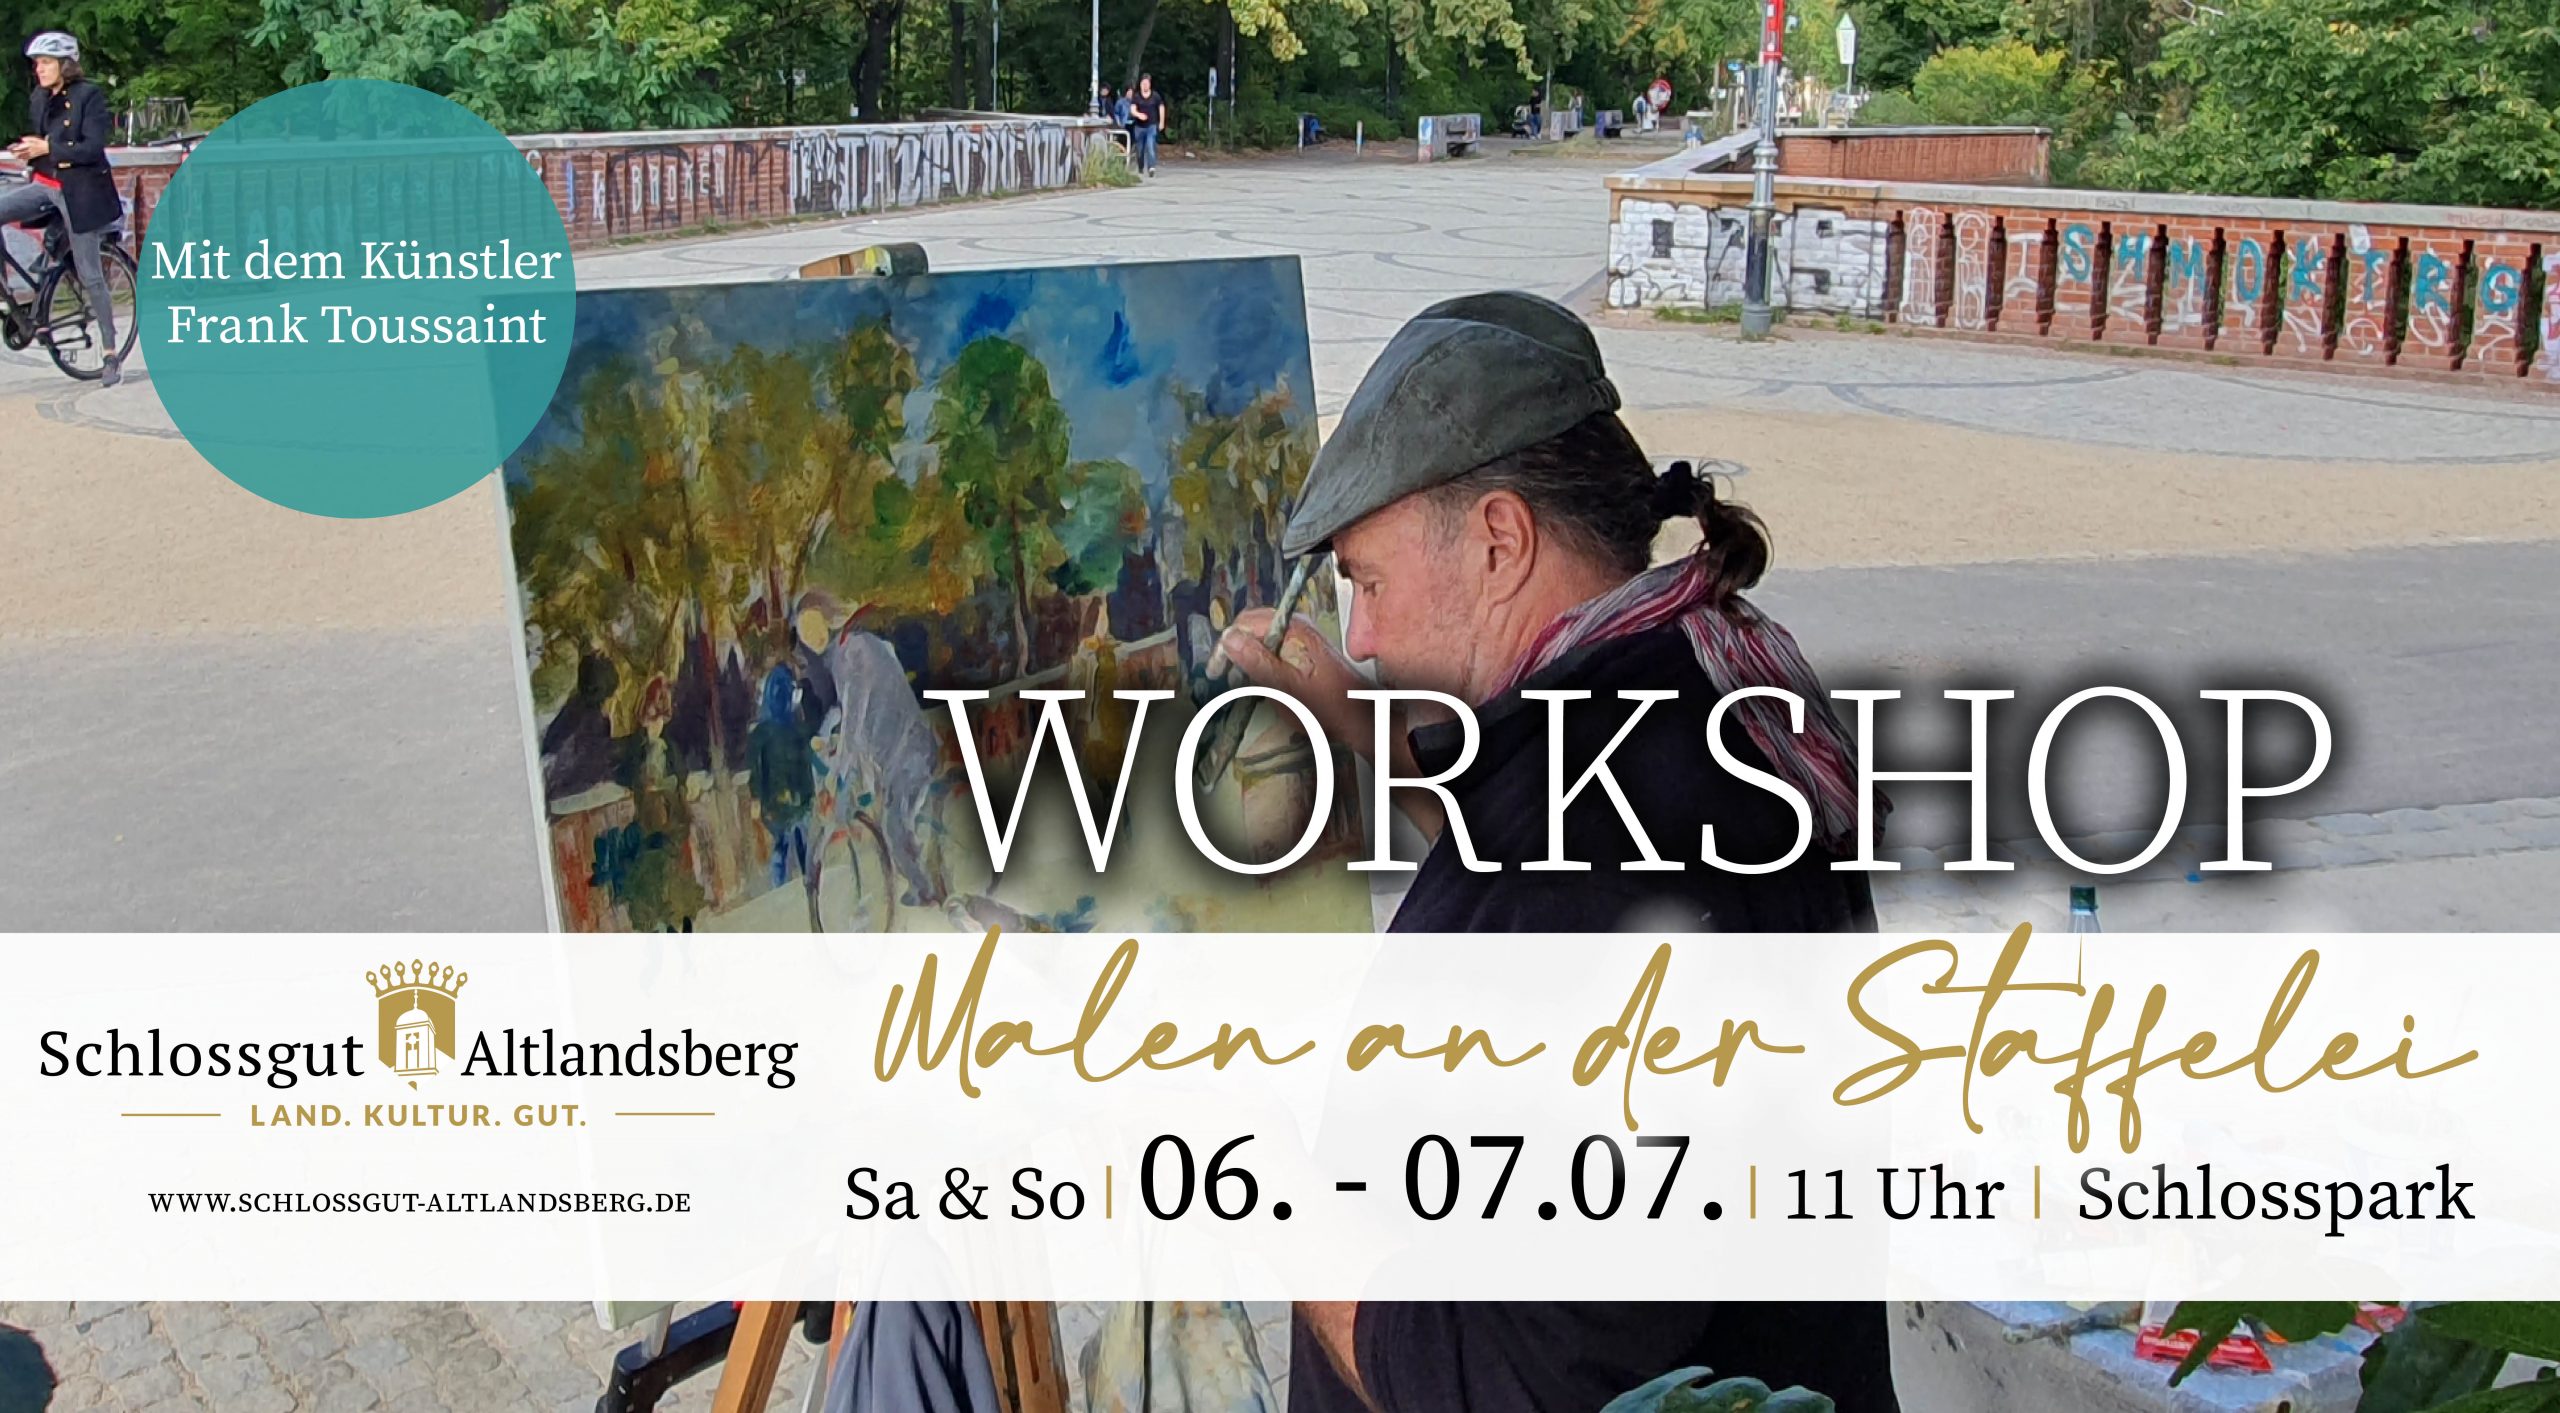 Am 6. und 7. Juli wird Frank Toussaint einen Malworkshop an der Staffelei im Schlosspark Altlandsberg geben.